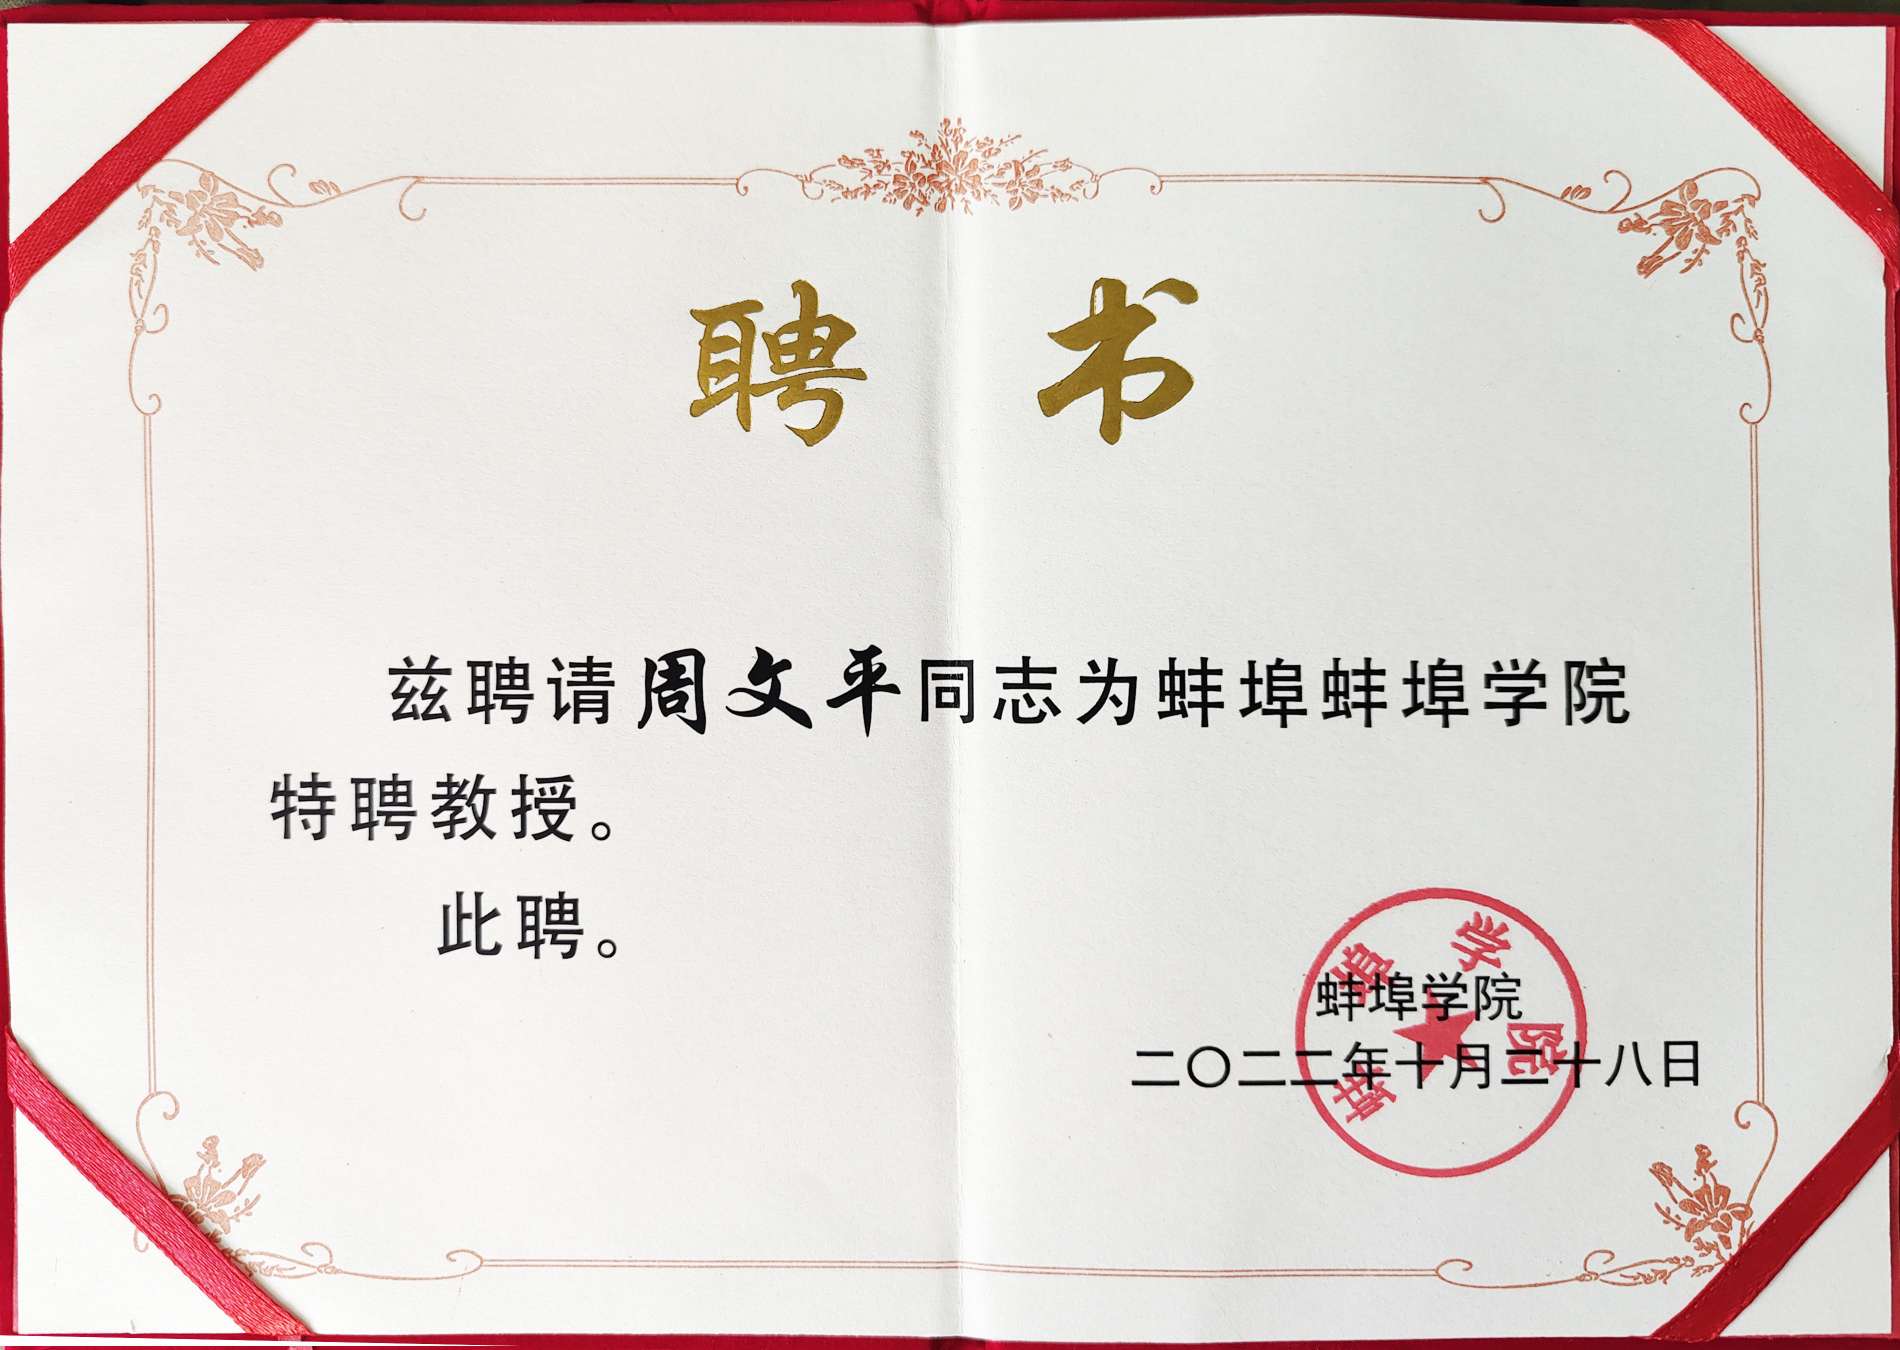 Đại học Bengbu đã trao chứng nhận danh dự "Giáo sư ưu tú" cho Long Hua Zhou Wenping!